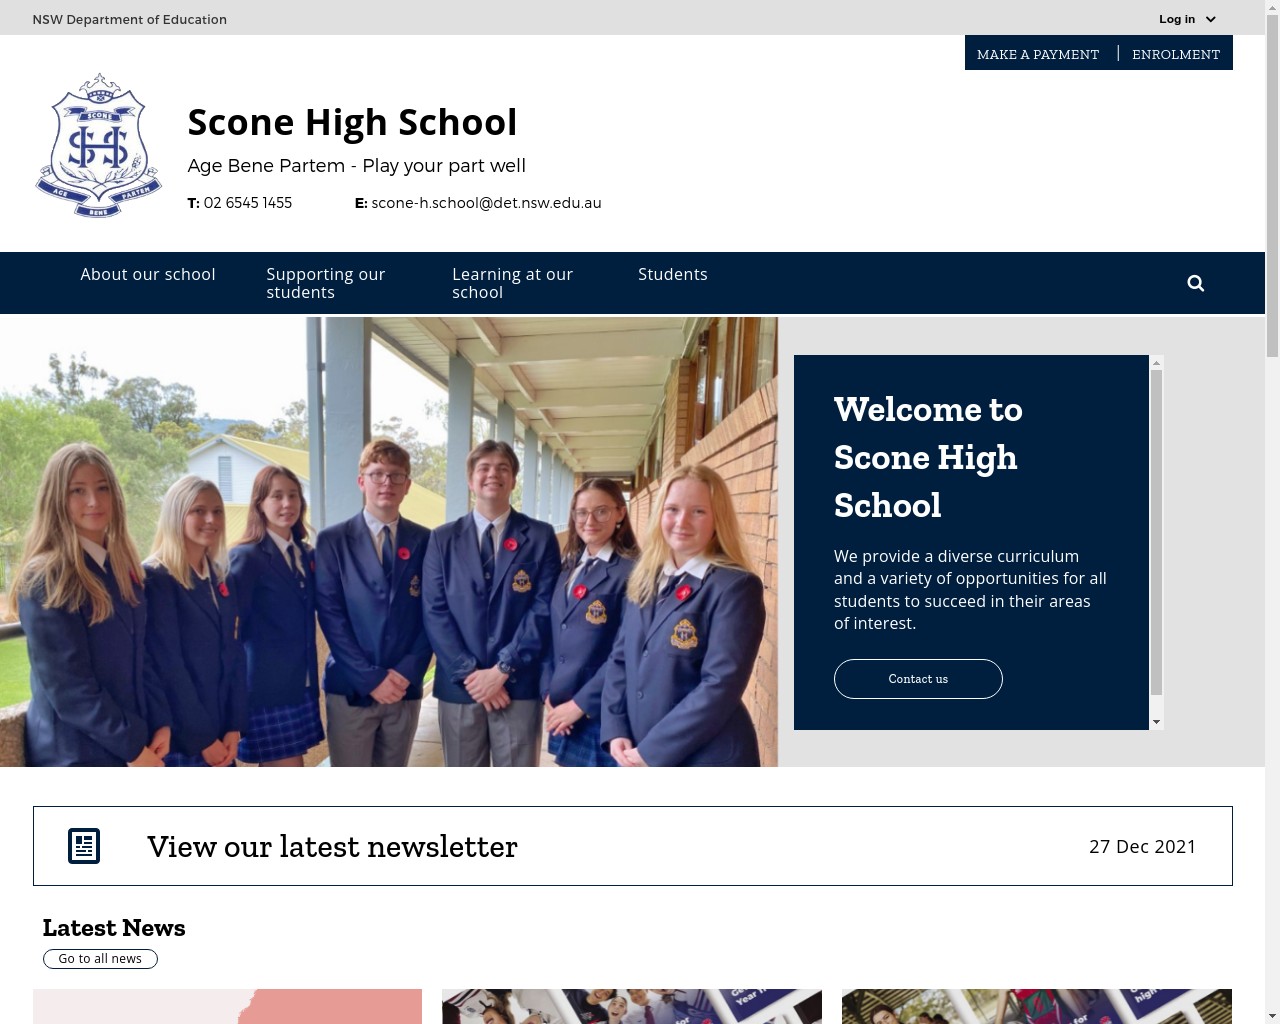 Scone High School